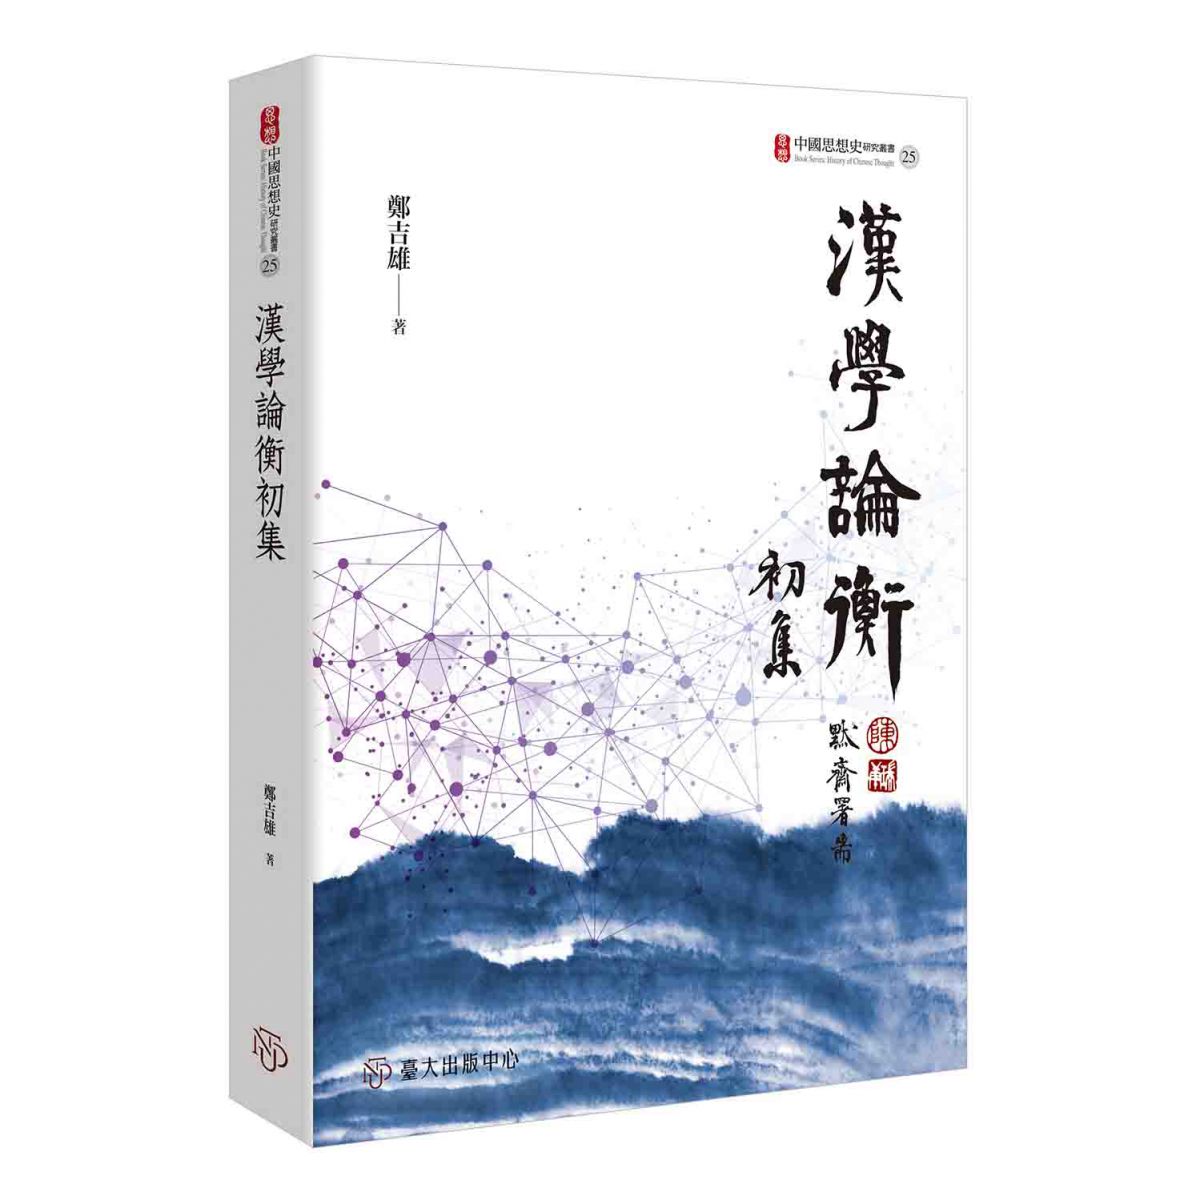 《漢學論衡初集》說明「漢學」導源於中國、植根於東亞，進而推展至全球的大勢